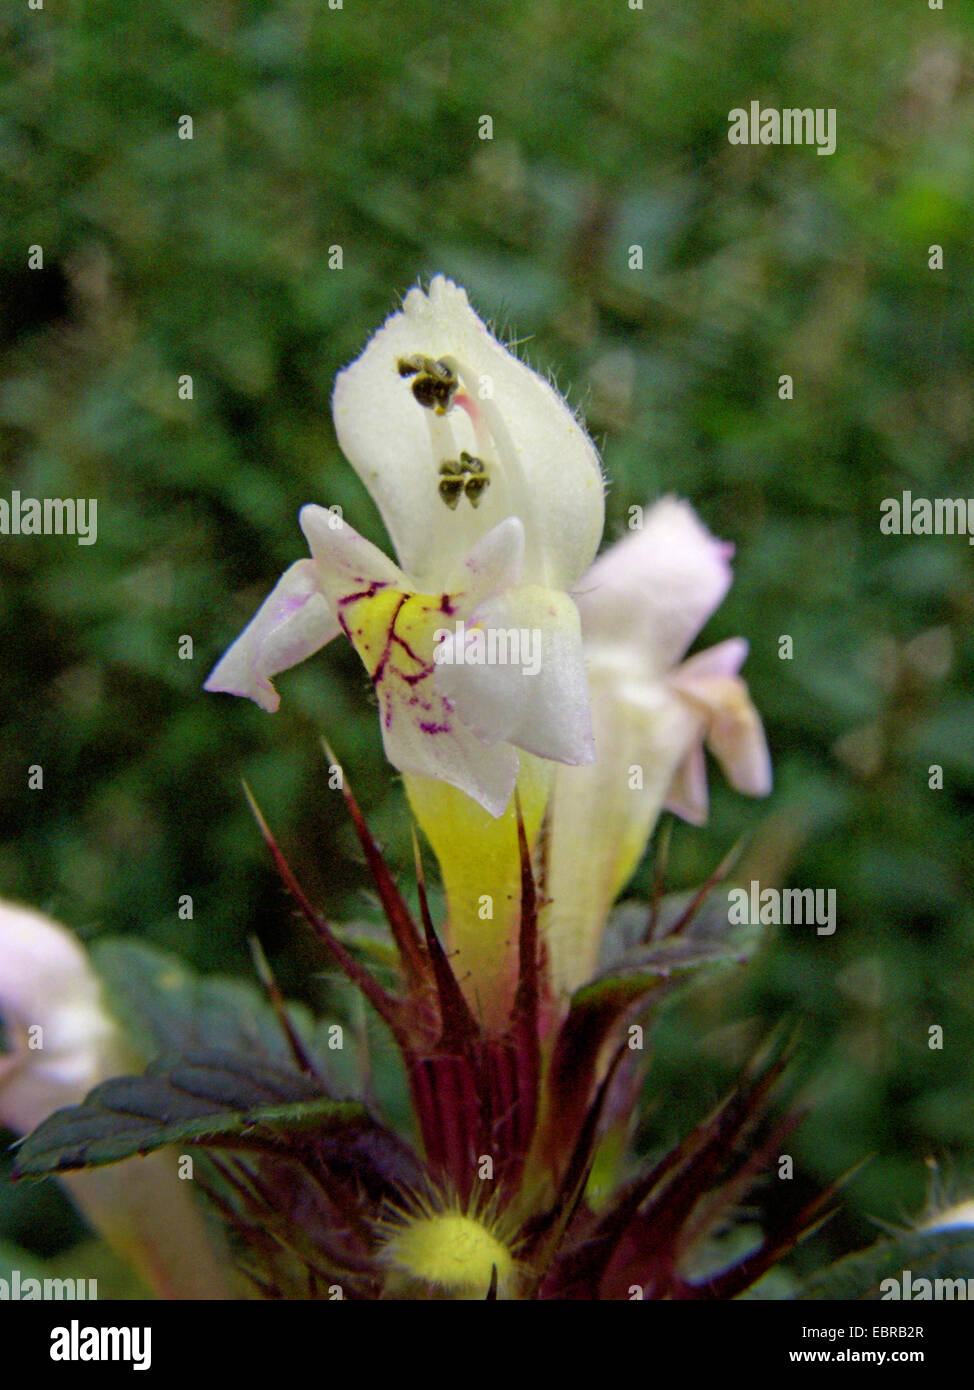 common hemp nettle, brittle-stem hempnettle (Galeopsis tetrahit), flower, Germany Stock Photo